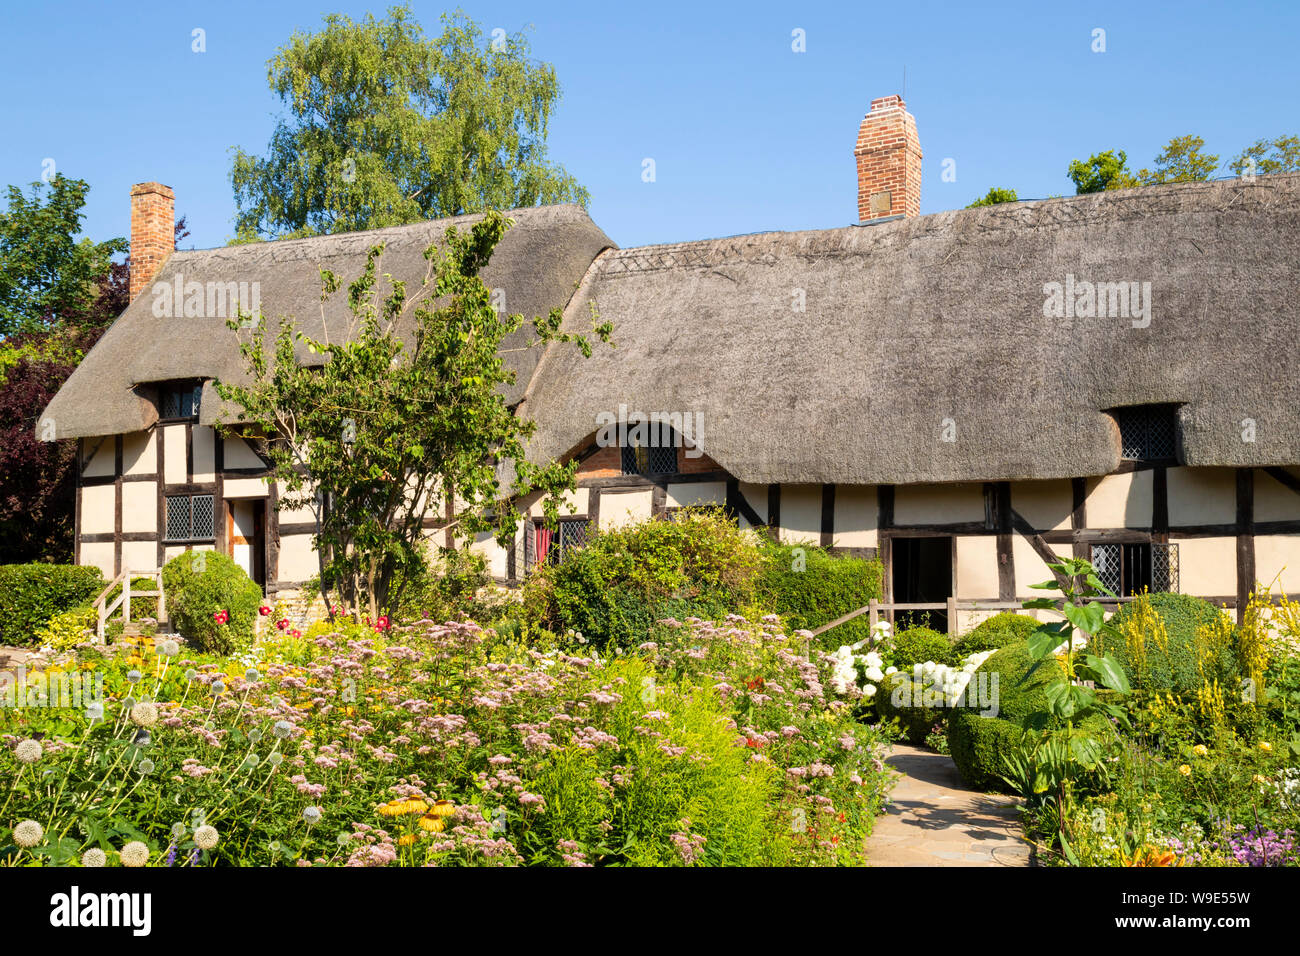 La cabaña de Anne Hathaway una casita con techo de paja en un jardín Shottery cerca de Stratford upon Avon Warwickshire Inglaterra GB Europa Foto de stock